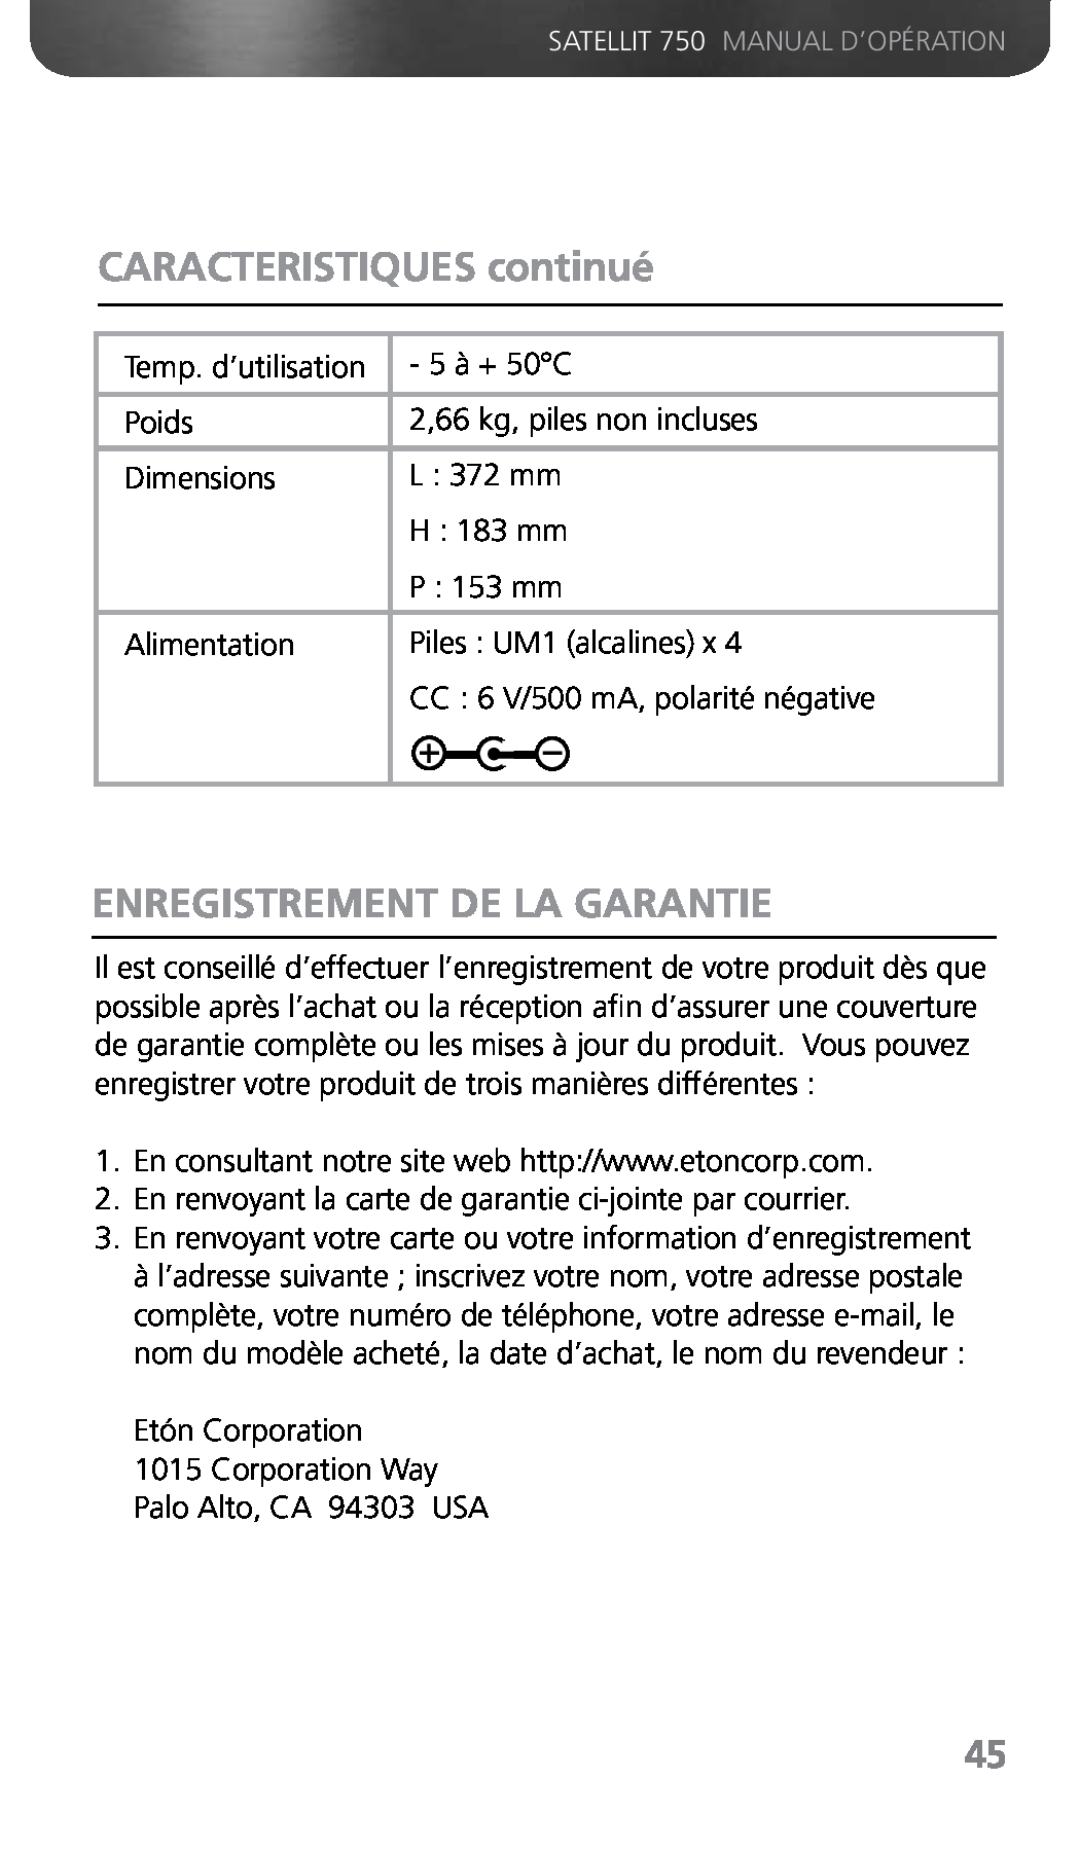 Grundig 750 owner manual CARACTERISTIQUES continué, Enregistrement De La Garantie 